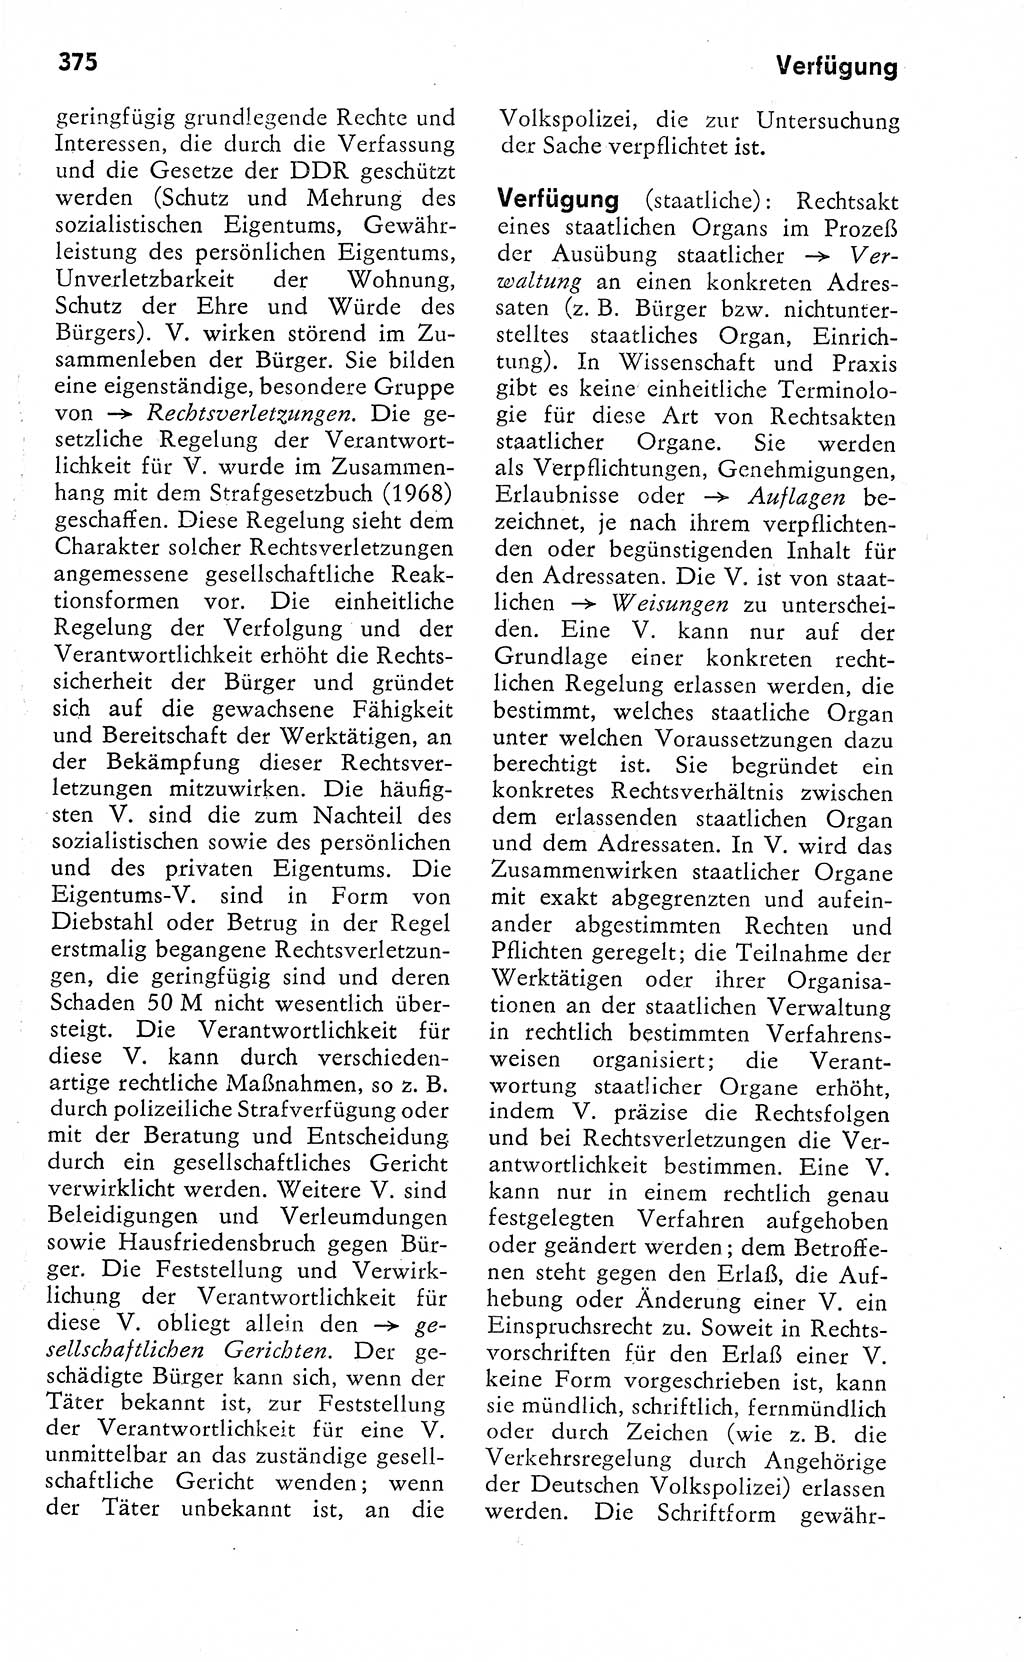 Wörterbuch zum sozialistischen Staat [Deutsche Demokratische Republik (DDR)] 1974, Seite 375 (Wb. soz. St. DDR 1974, S. 375)